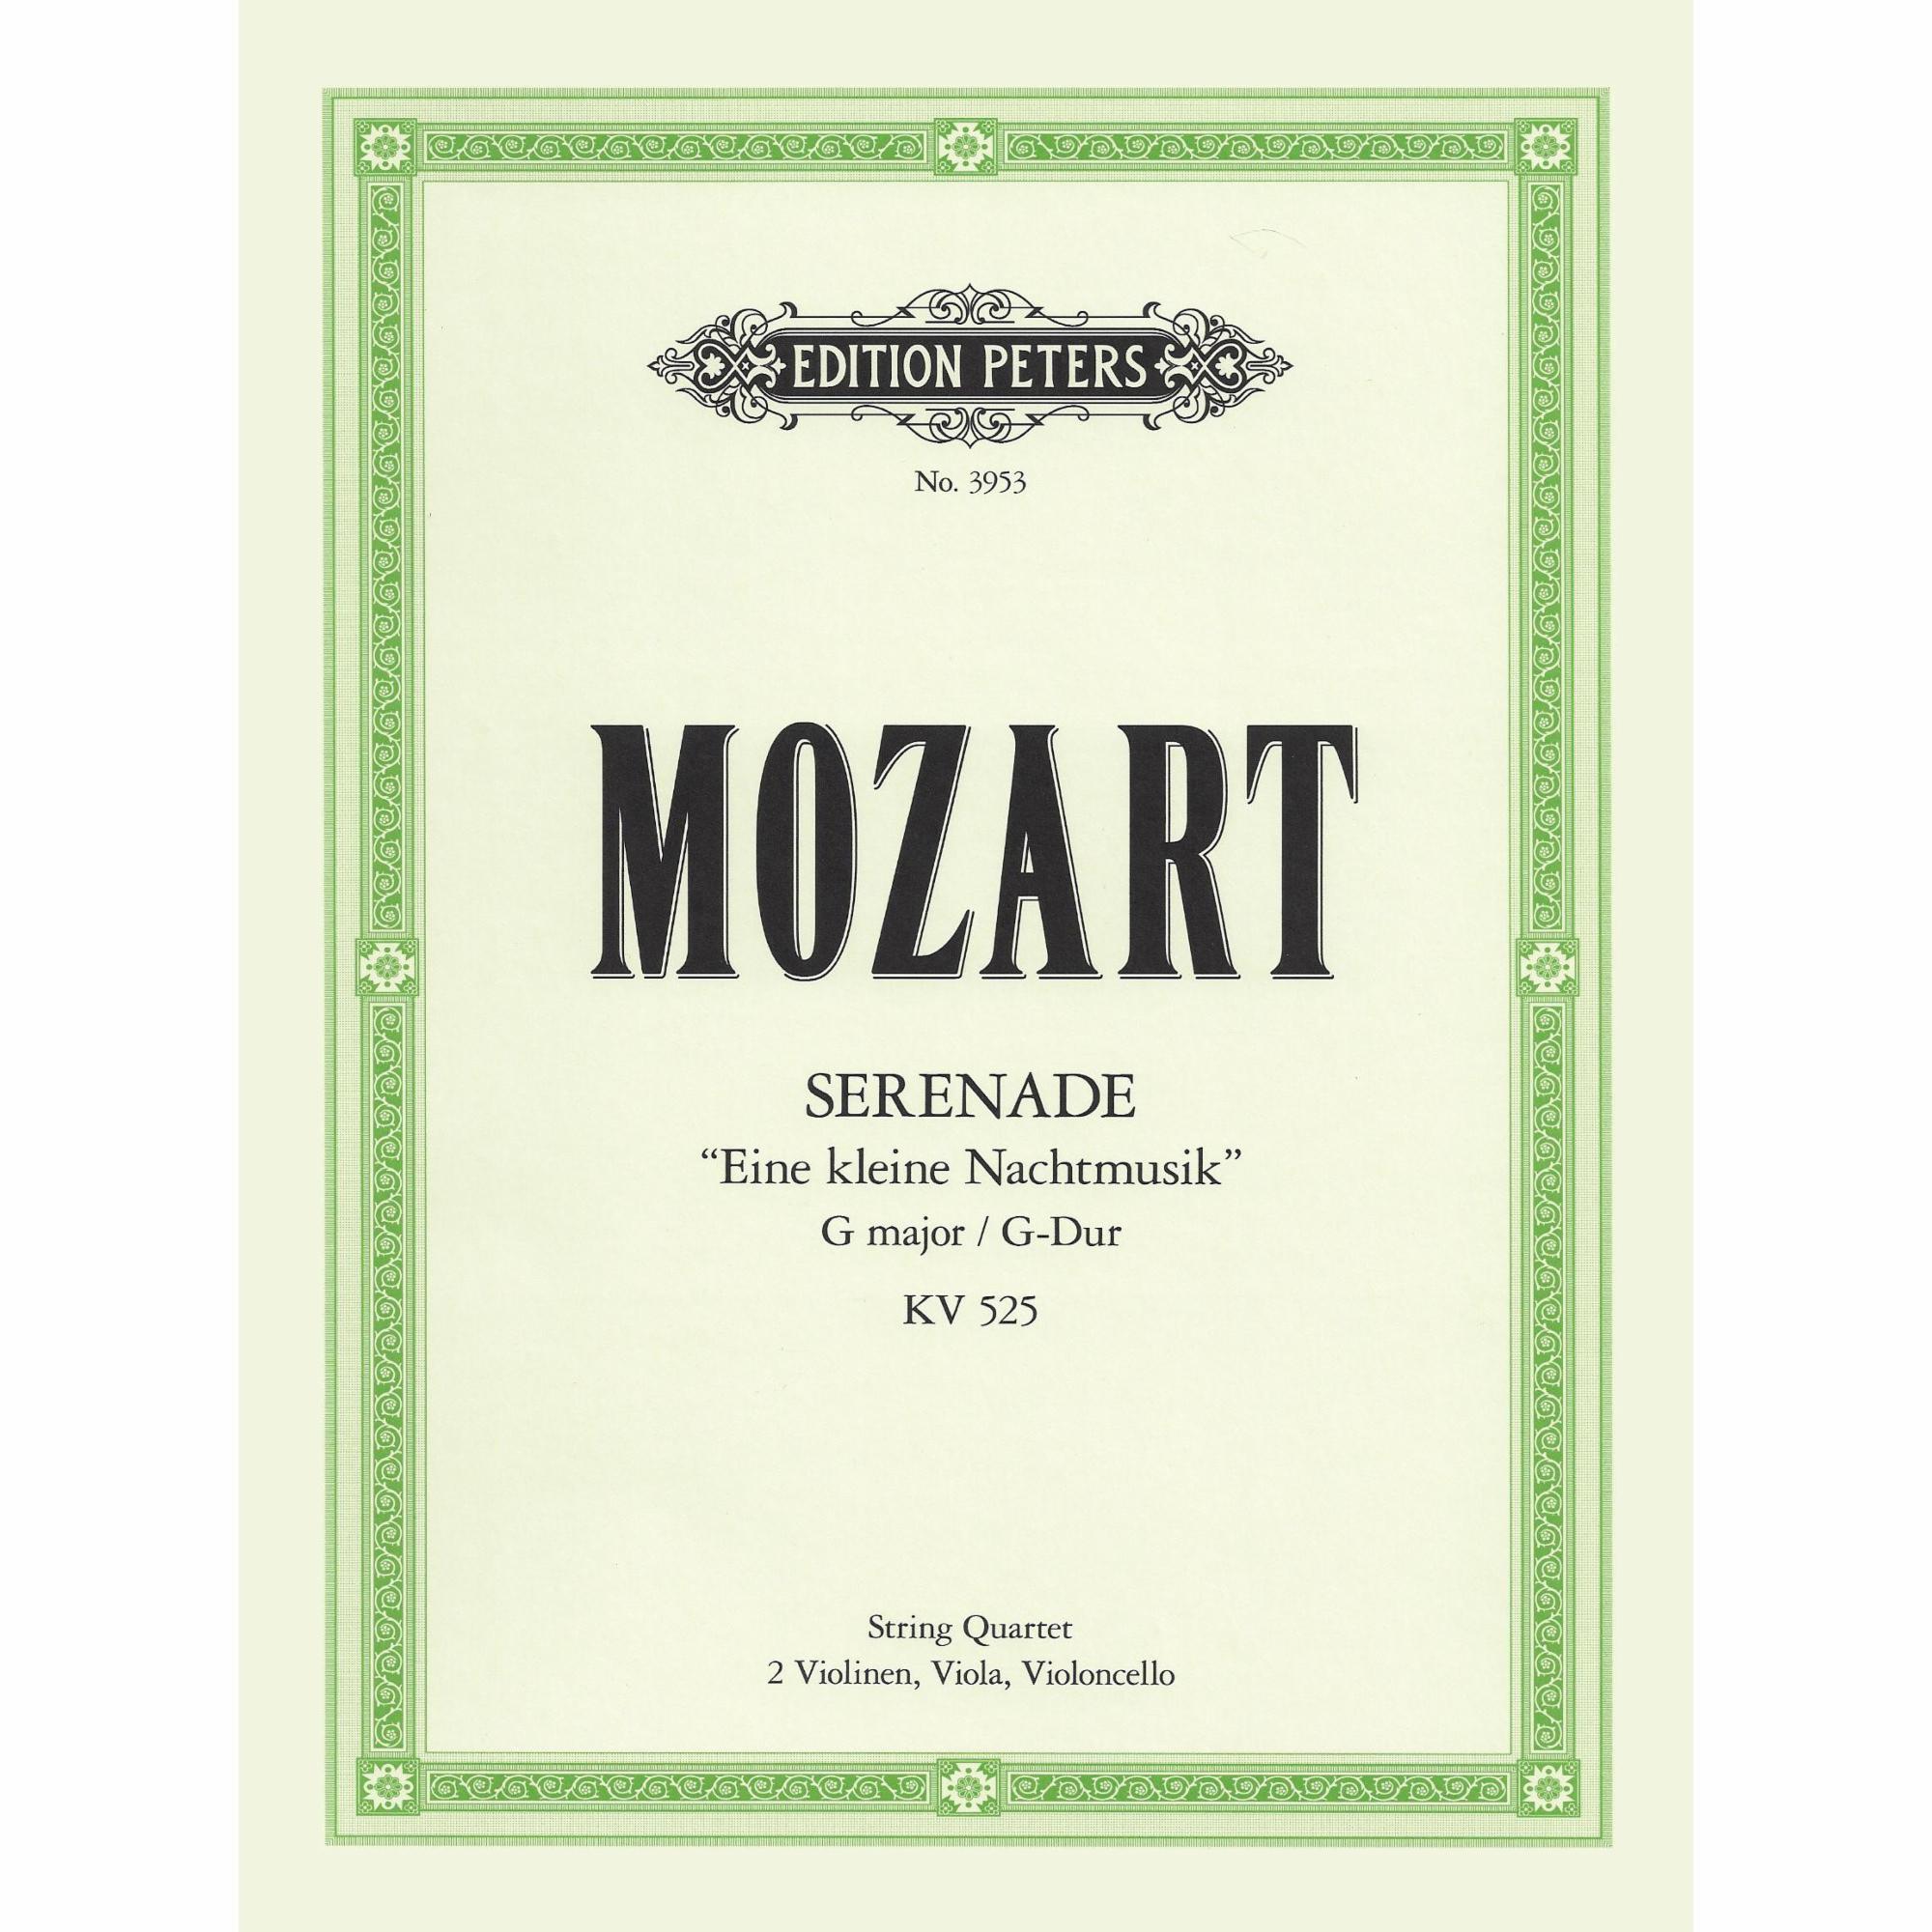 Mozart -- Eine kleine Nachtmusik, K. 525